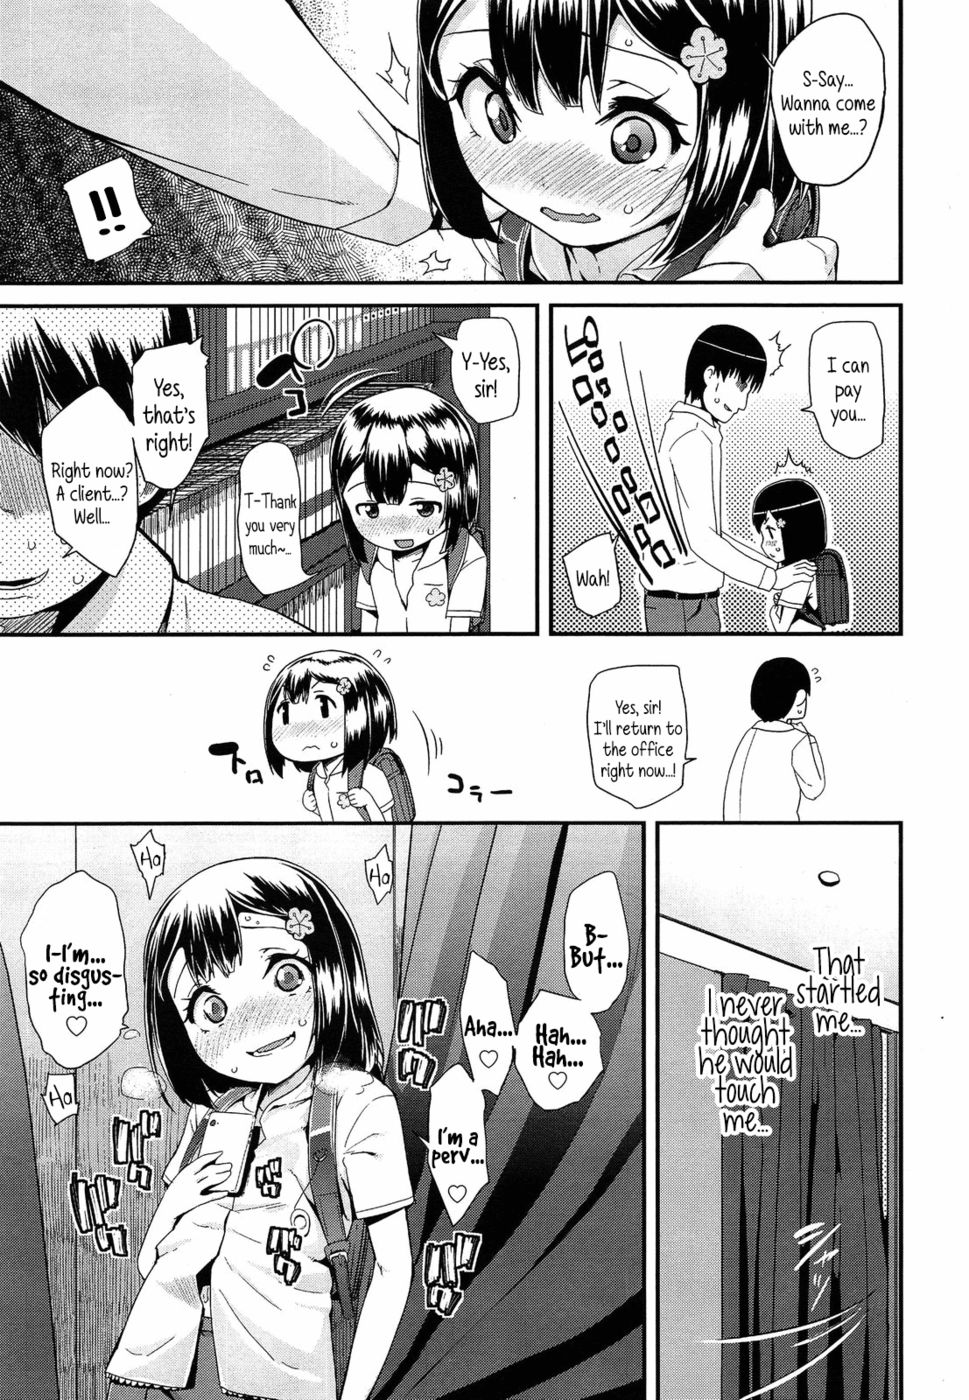 Hentai Manga Comic-Masturbating-Chapter 1 - 2 - 3 - 4 - 5-3